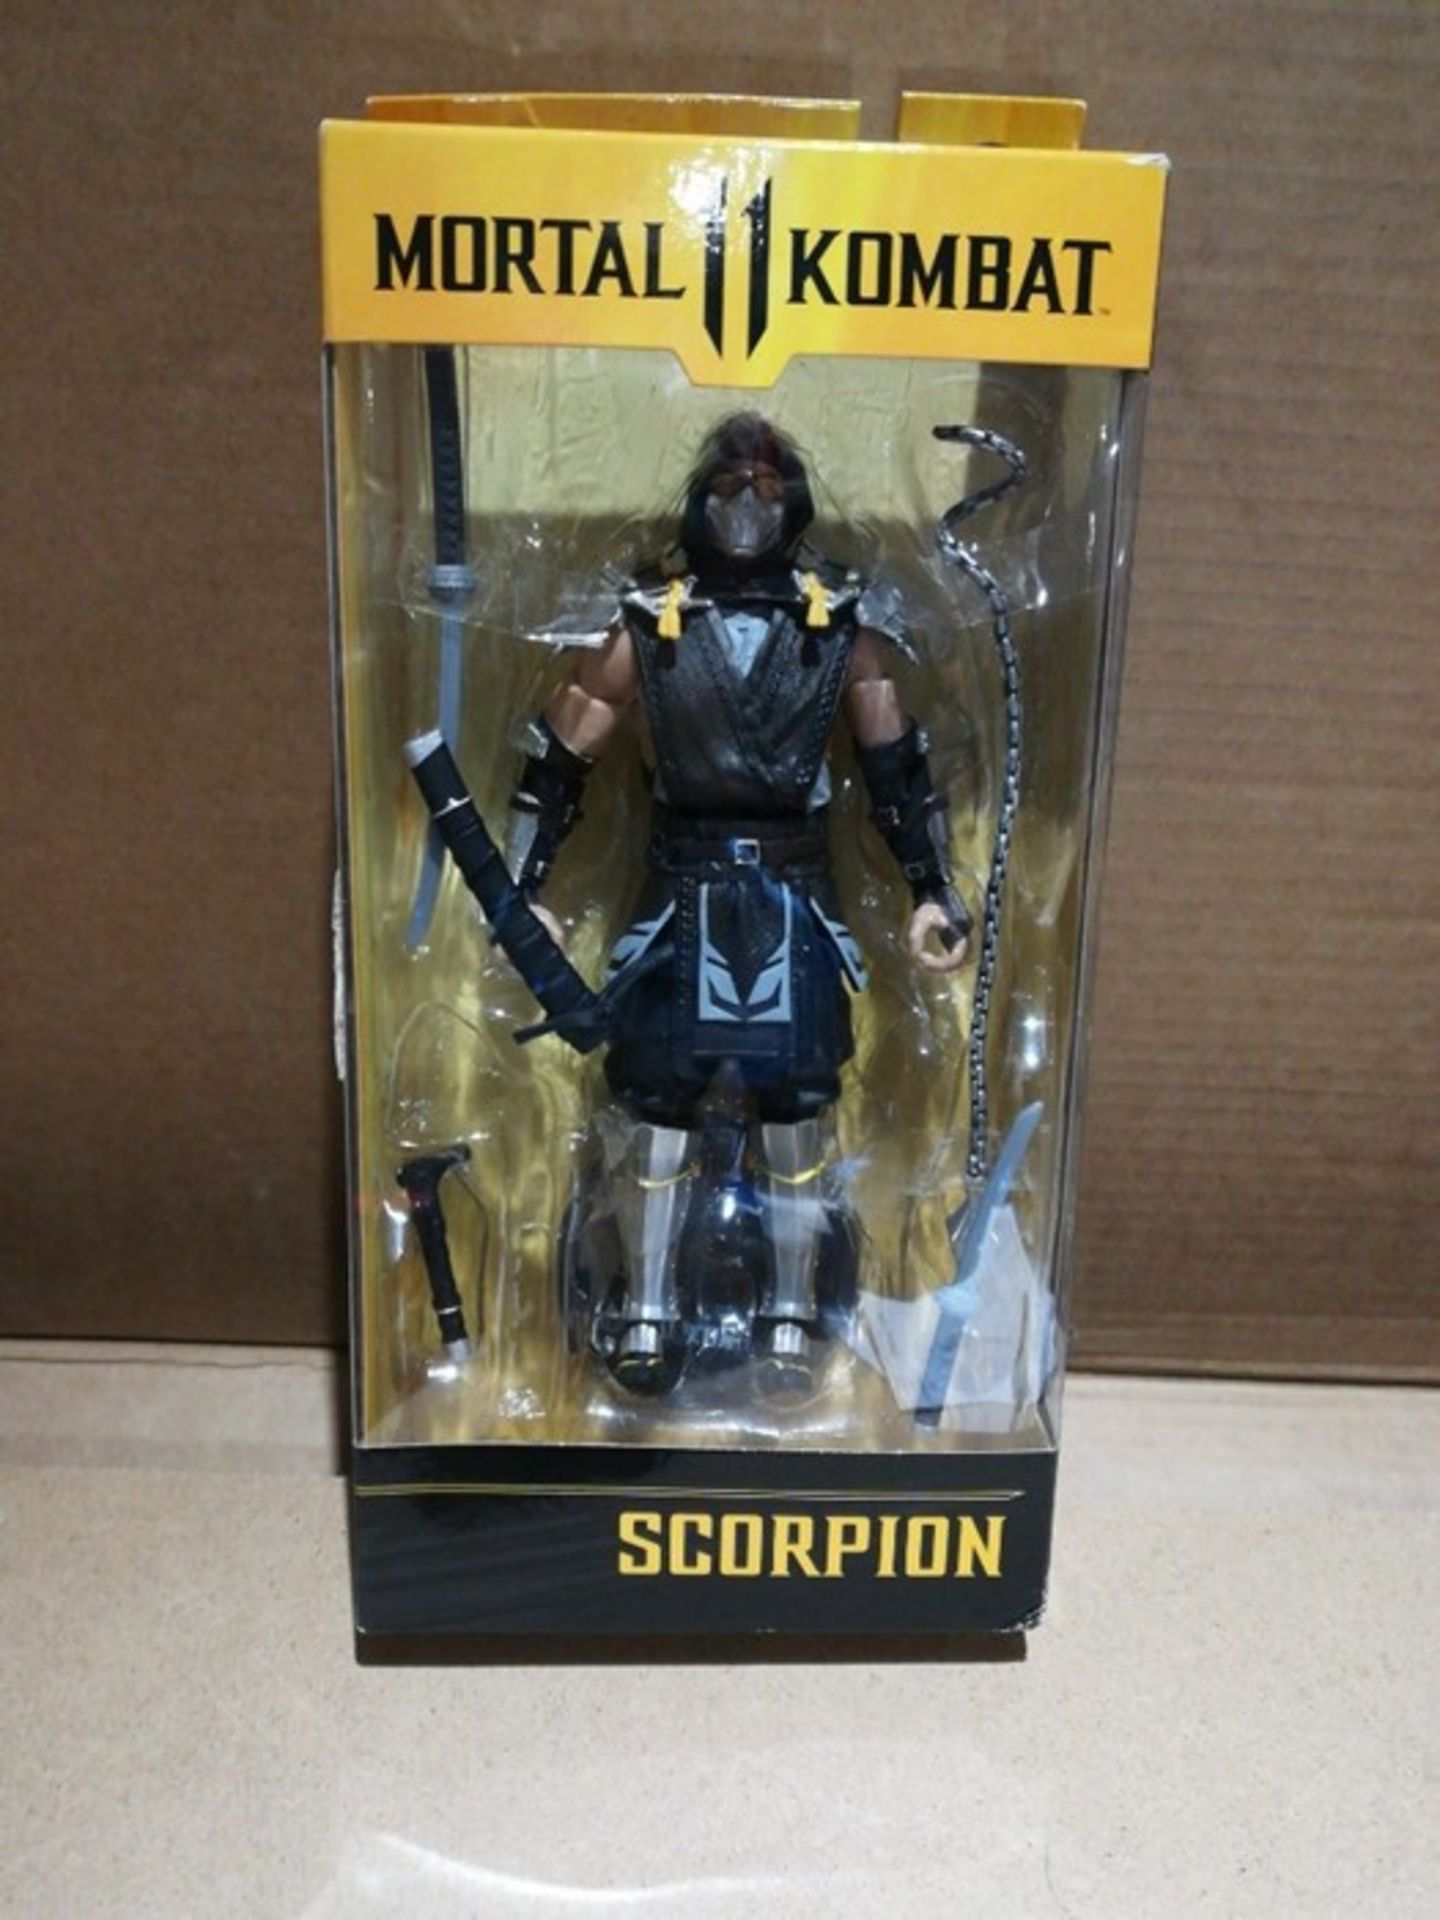 M�c�F�a�r�l�a�n�e� �-� �M�o�r�t�a�l� �K�o�m�b�a�t� �7� �F�i�g�u�r�e�s� �5� �-� �S�c�o�r�p�i�o�n� �(� - Image 2 of 2